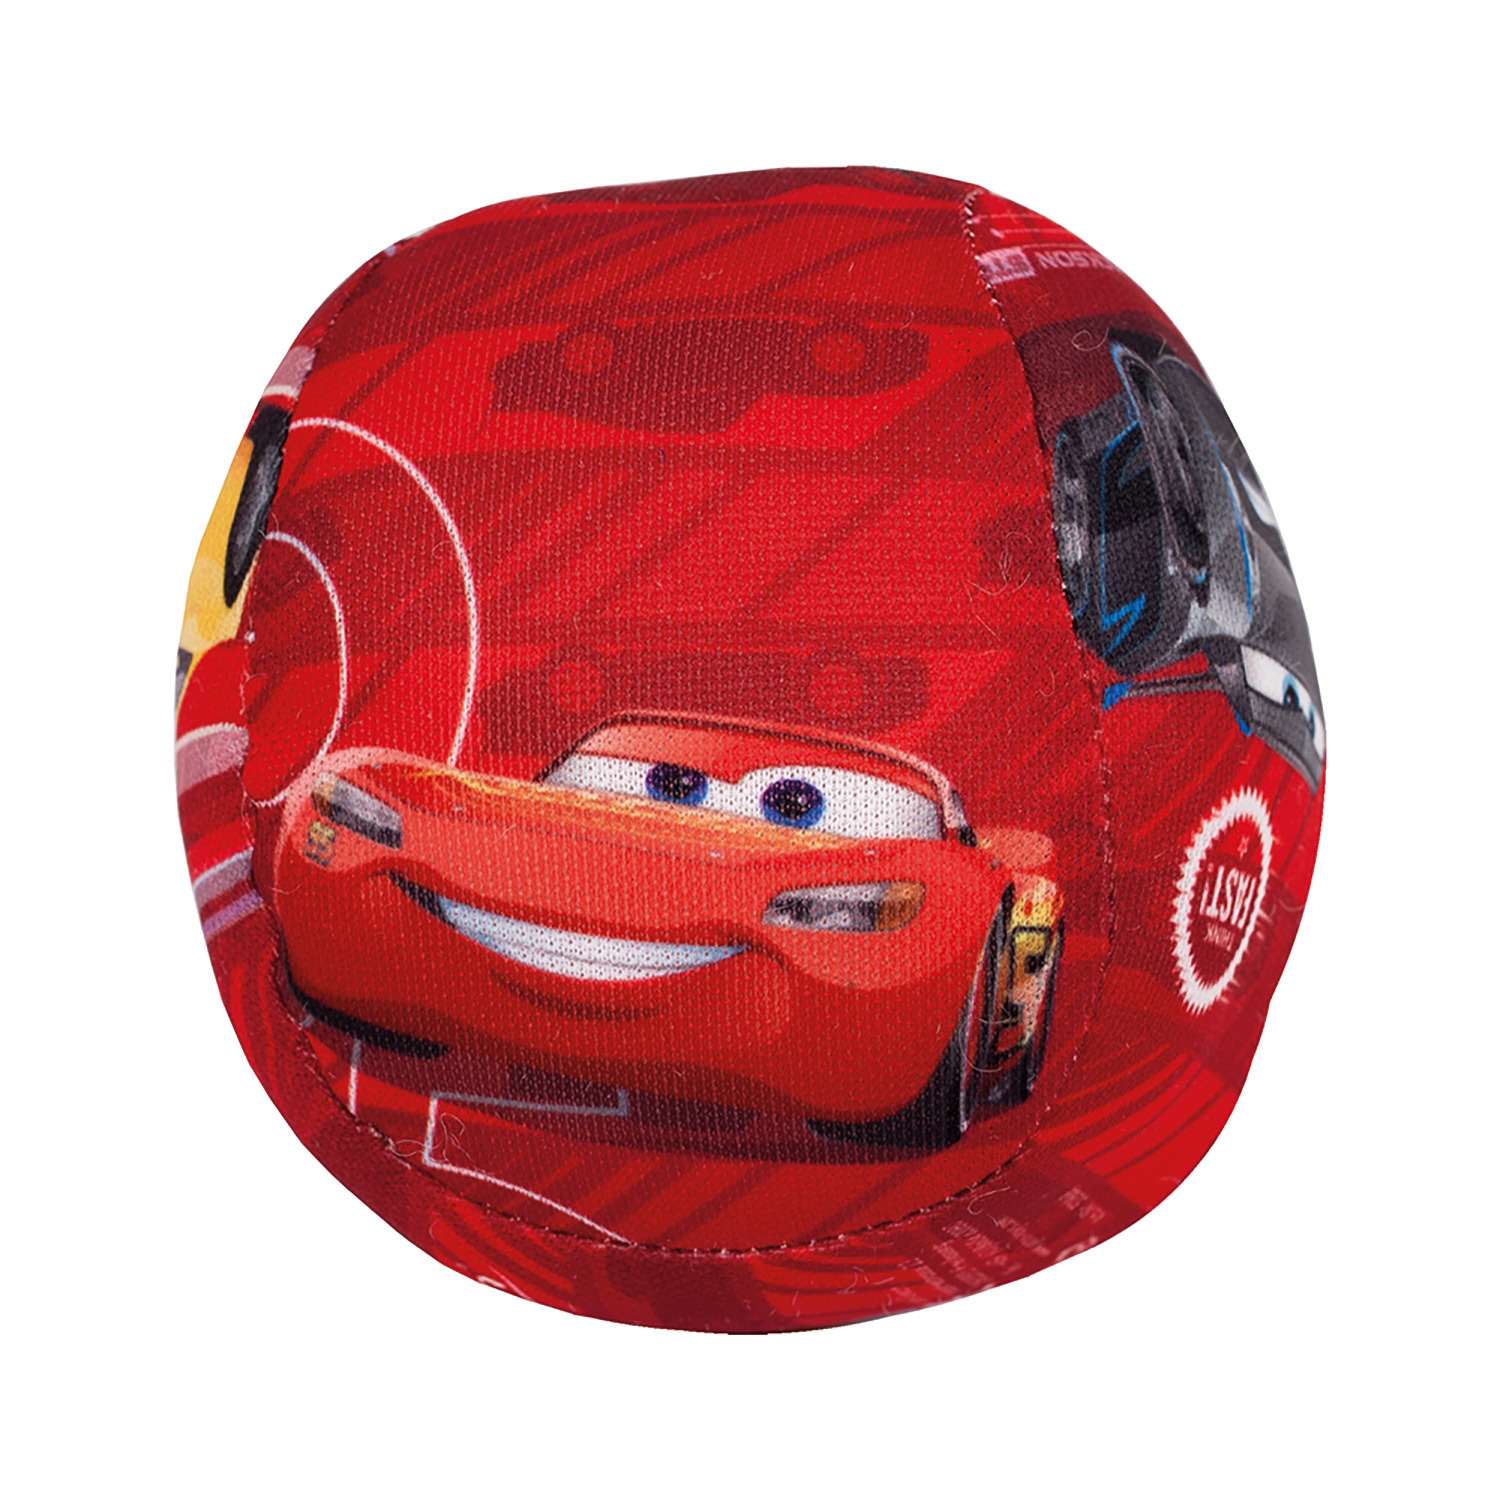 Мяч John Дисней мягкий Cars - фото 1